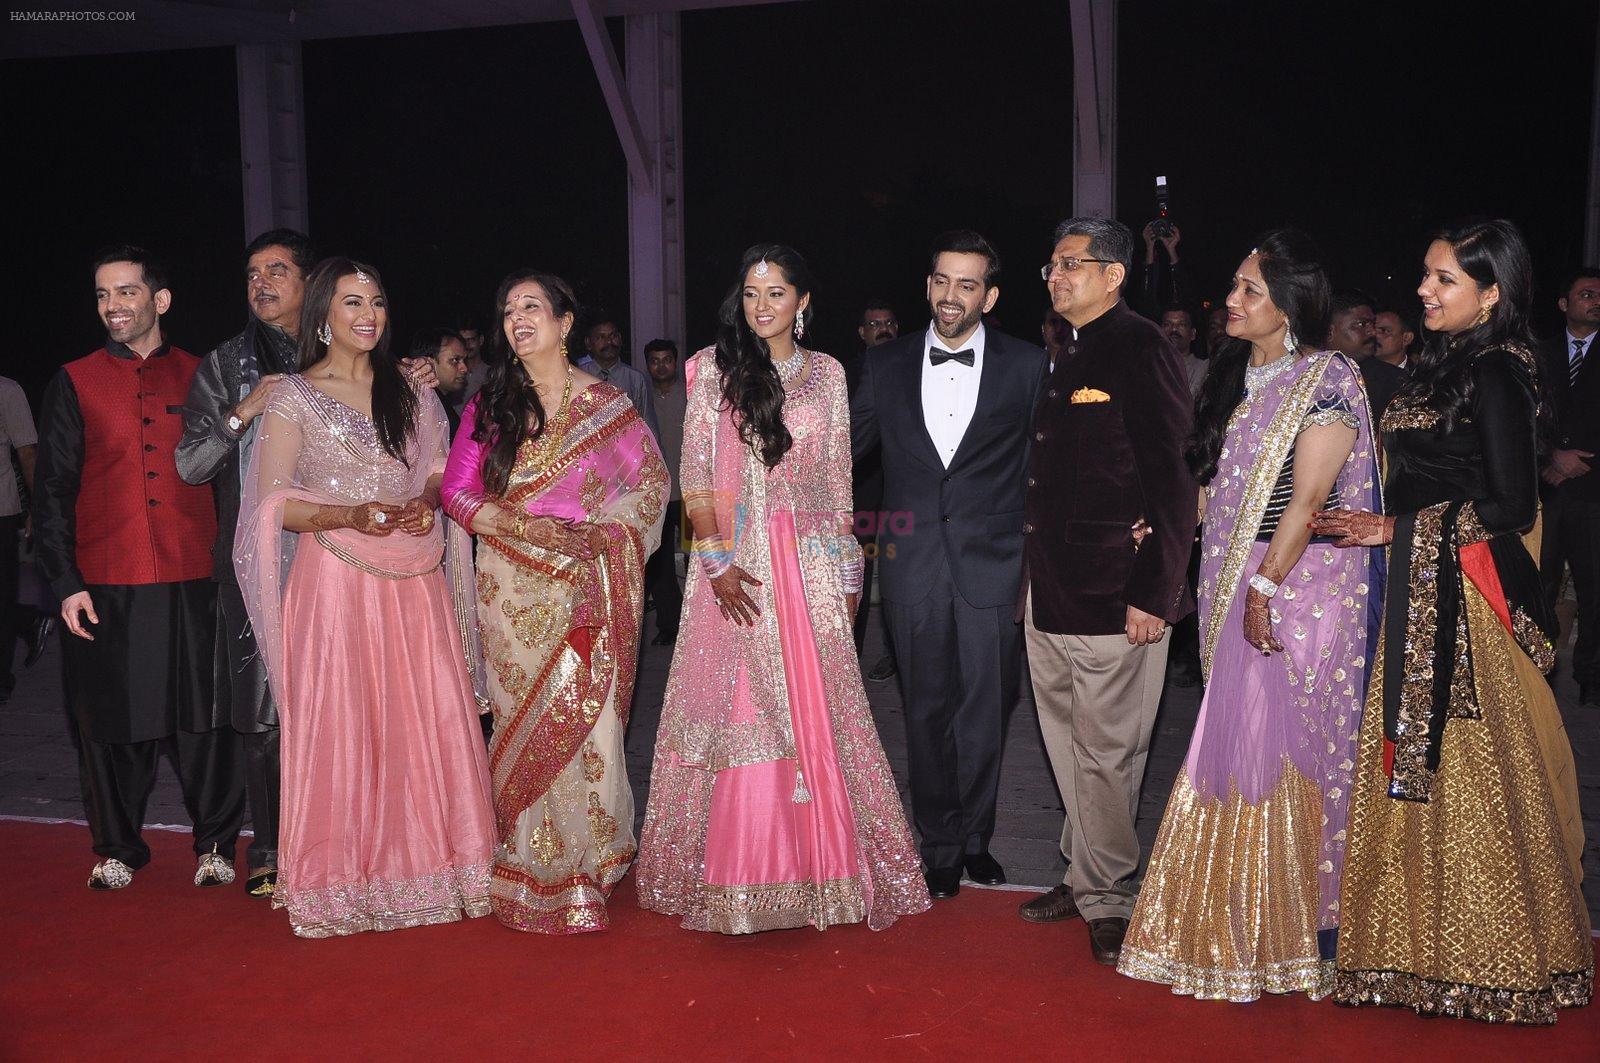 shatrughan sinha, Poonam Sinha, Sonakshi Sinha, Luv Sinha, Kush Sinha at Kush Wedding Reception in Sahara Star, Mumbai on 19th Jan 2015